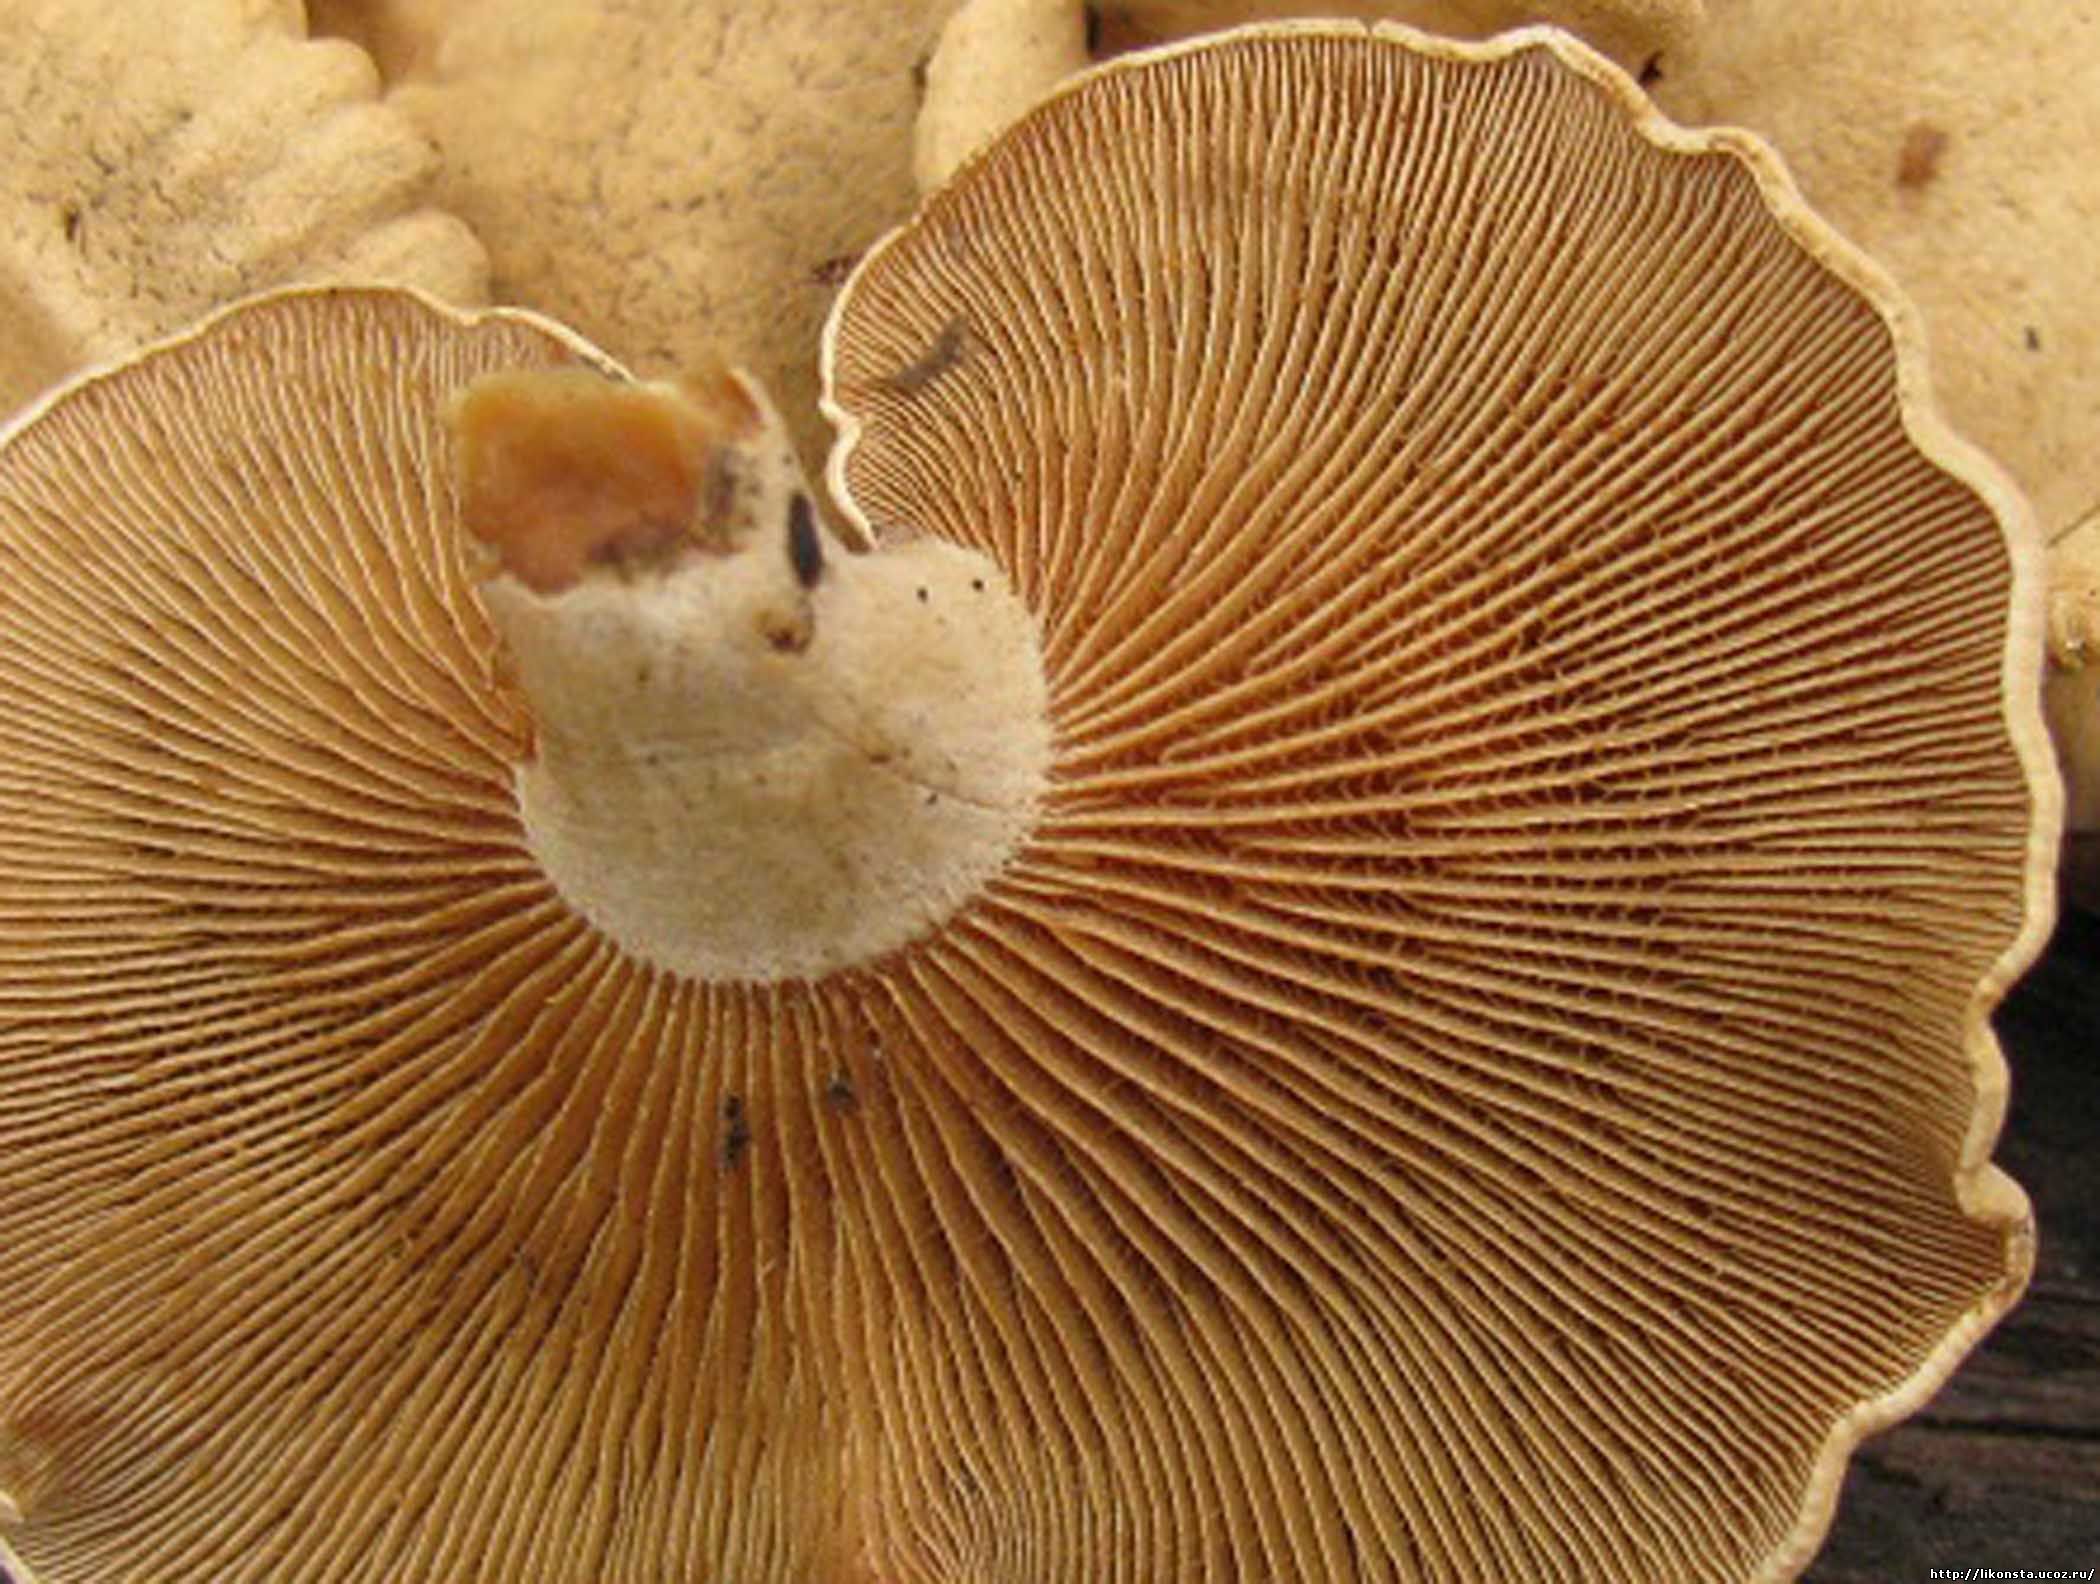 трубчатые грибы съедобные фото грибов с названиями